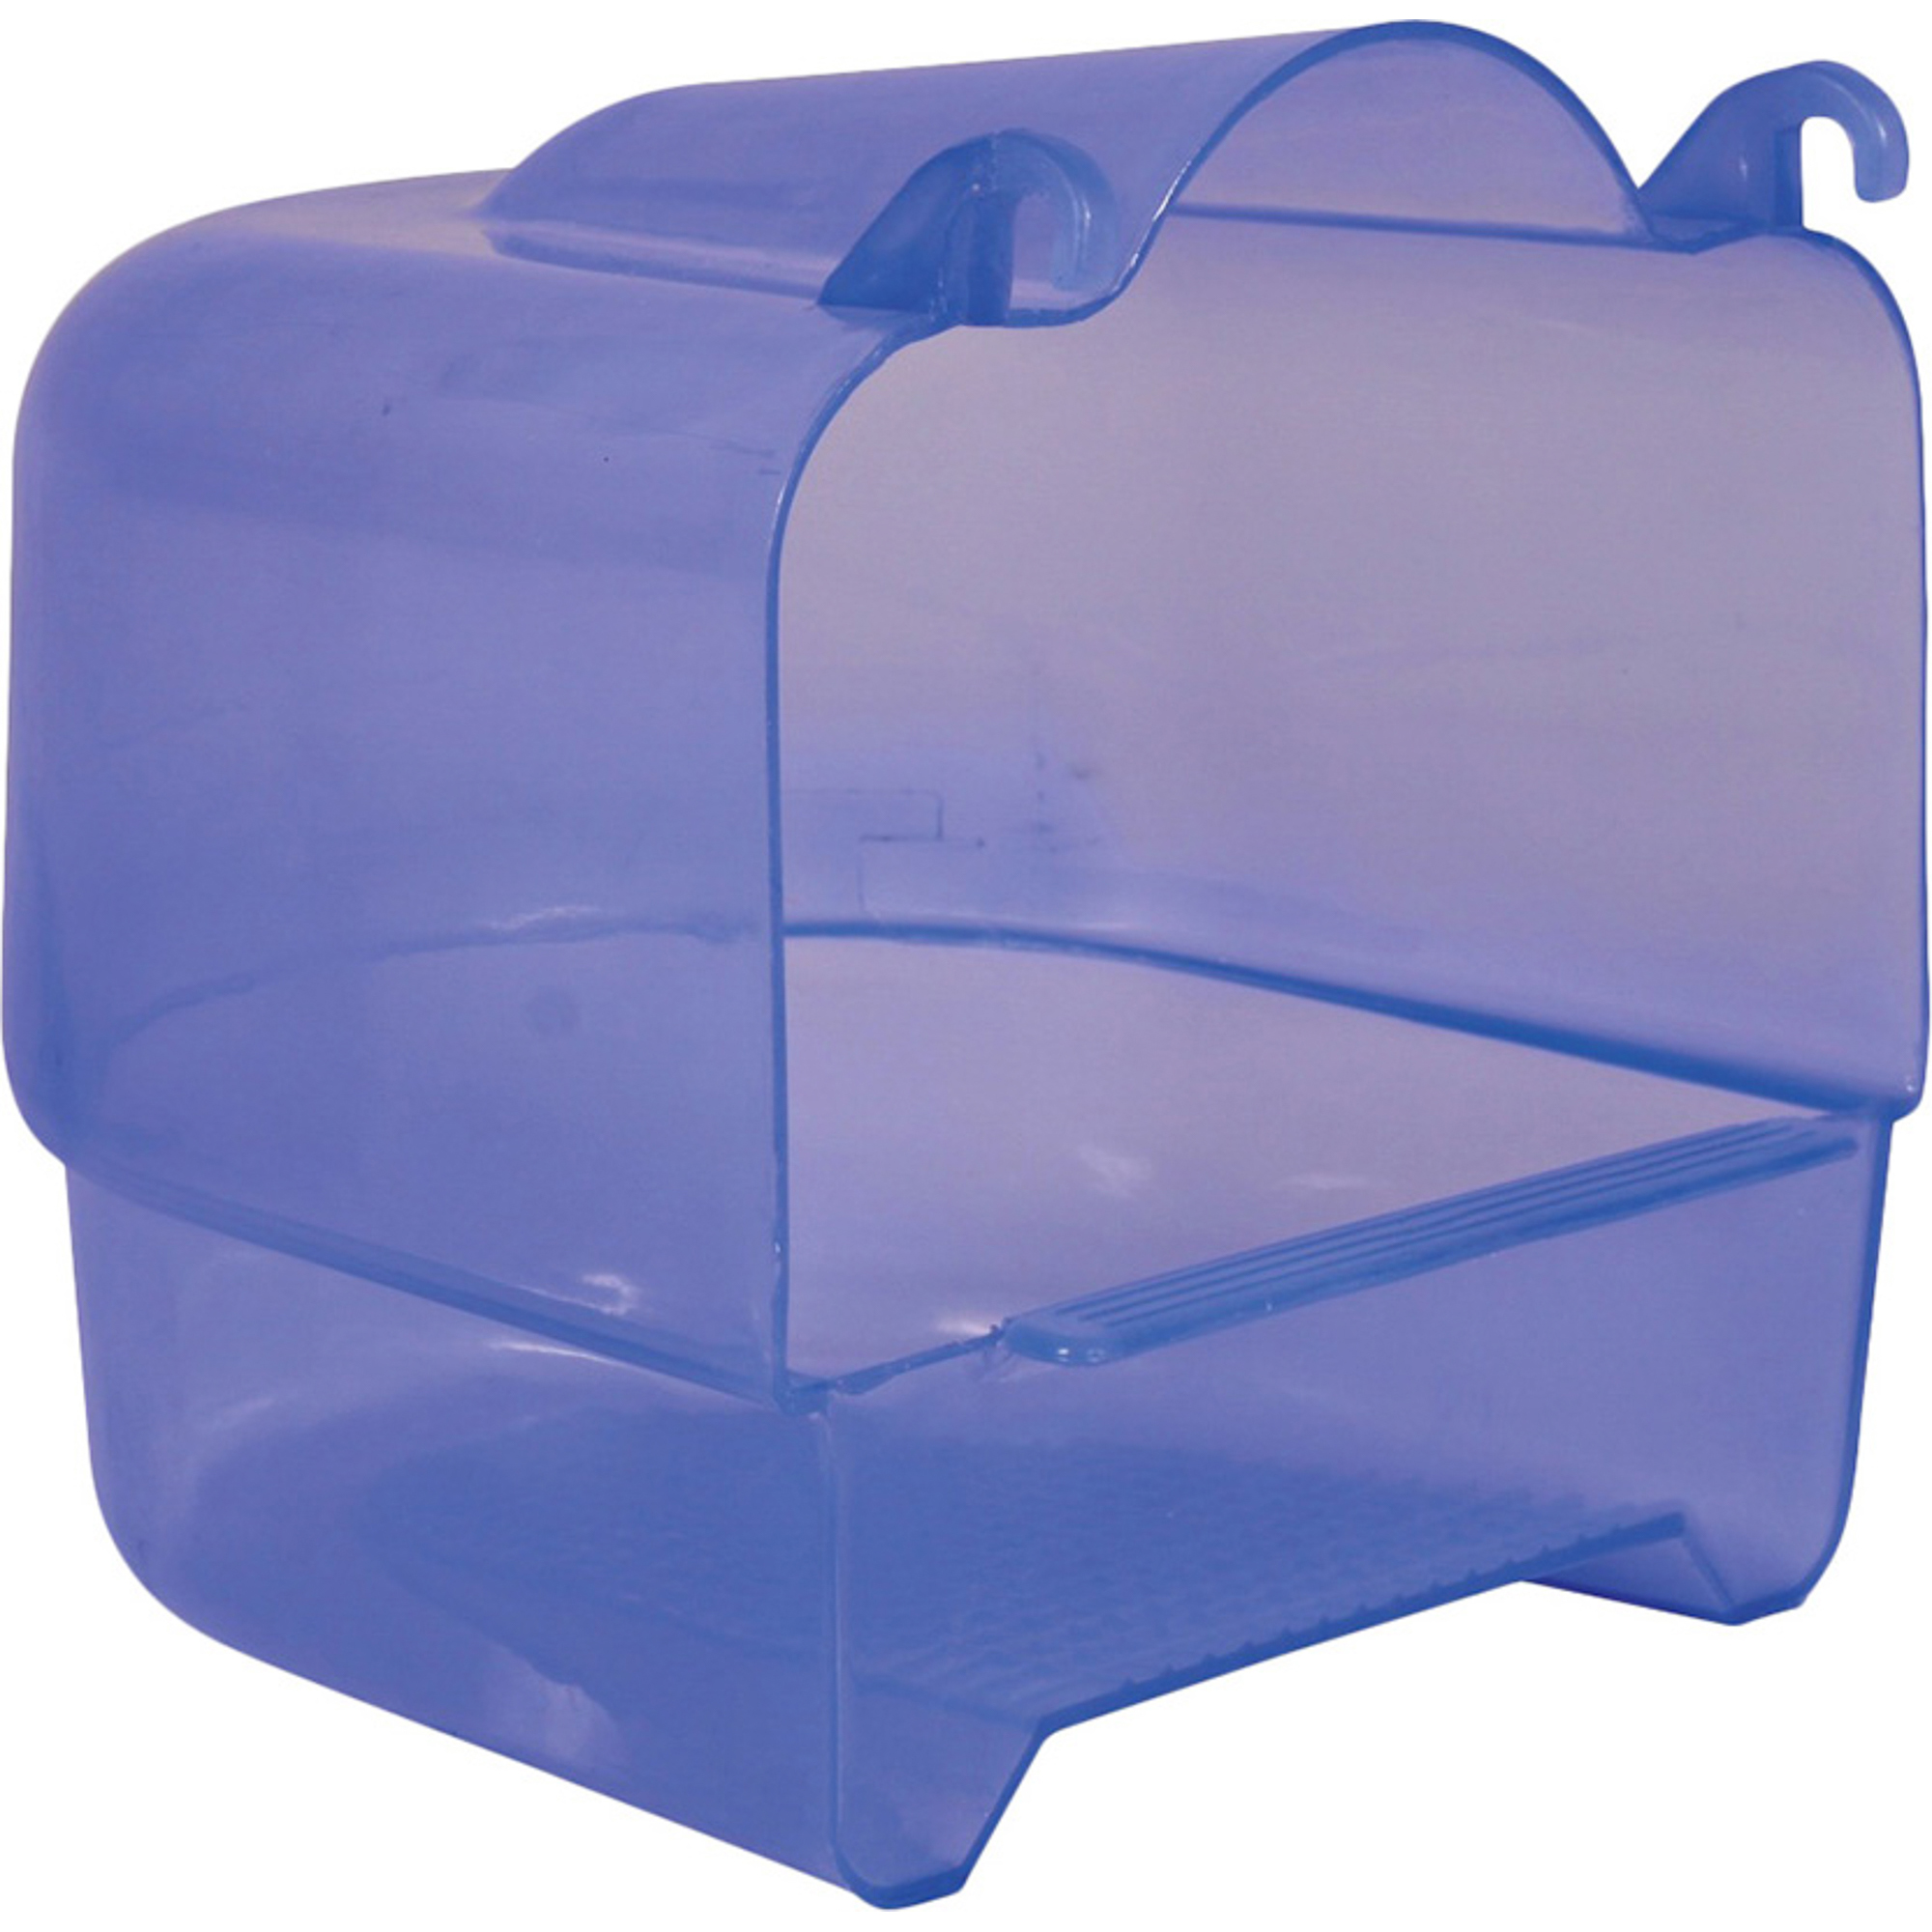 Купалка для птиц TRIXIE Пластиковая прозрачно-голубая купалка для птиц trixie пластиковая прозрачно голубая